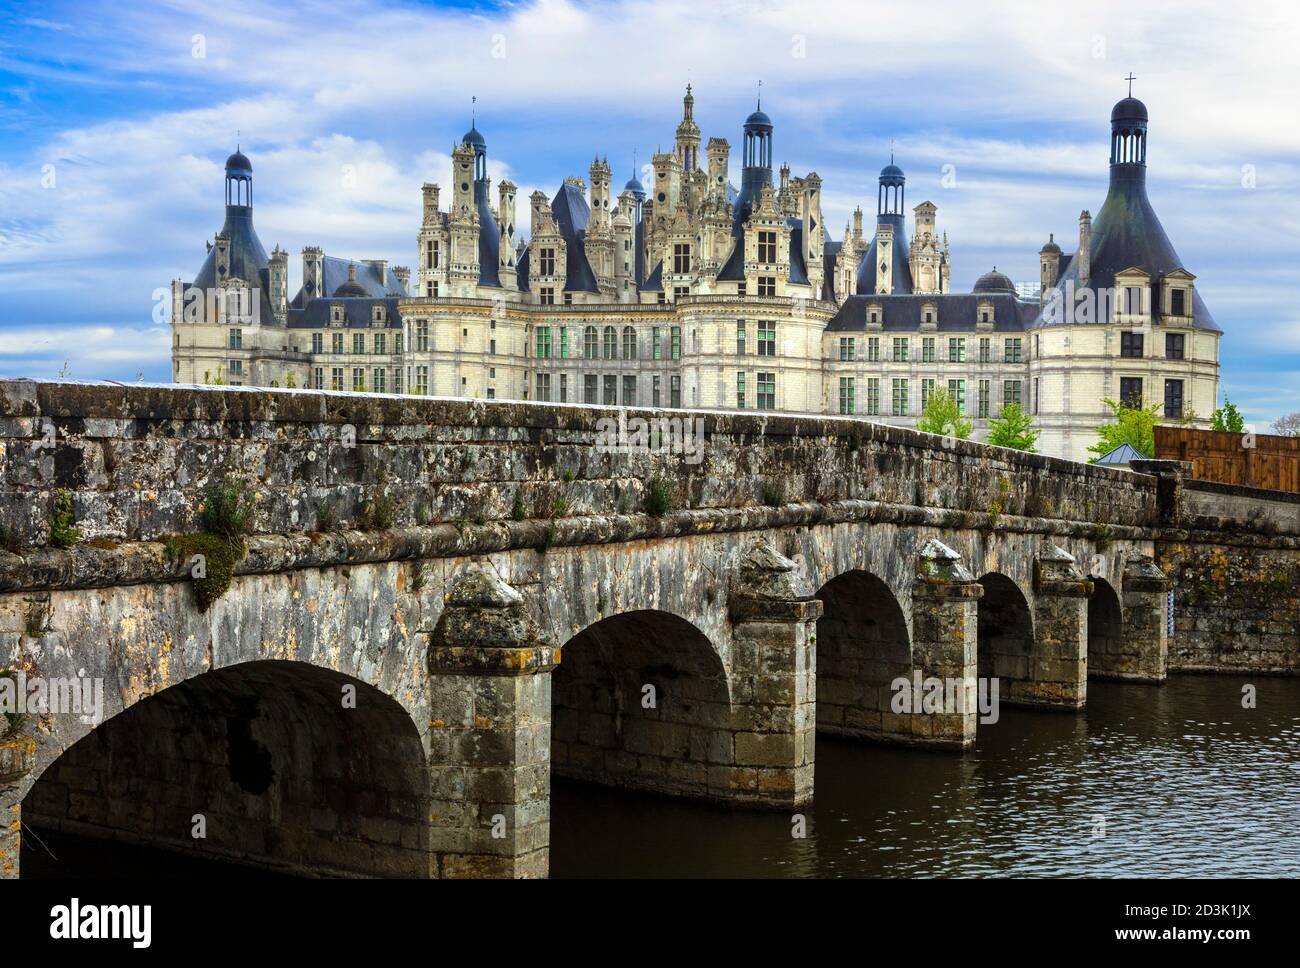 Castillo de Chambord - obra maestra de la arquitectura renacentista. Famoso valle del Loira en Francia Foto de stock